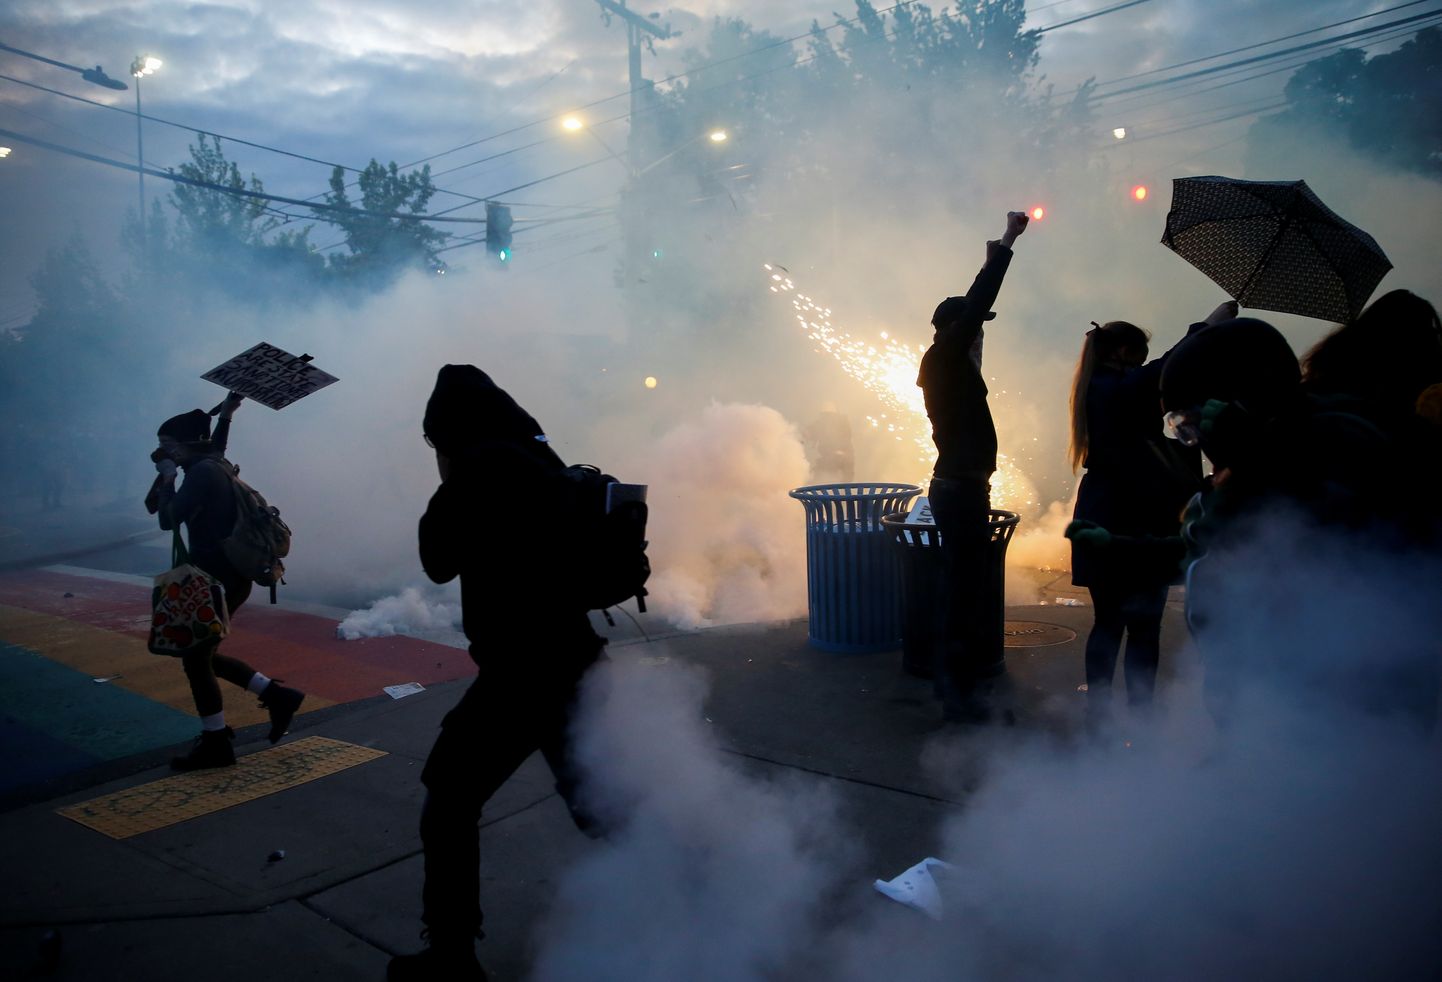 Seattle'i politsei ründab põgenevaid protestijaid pisargaasi ja valgusgranaatidega, 1. juuni 2020.